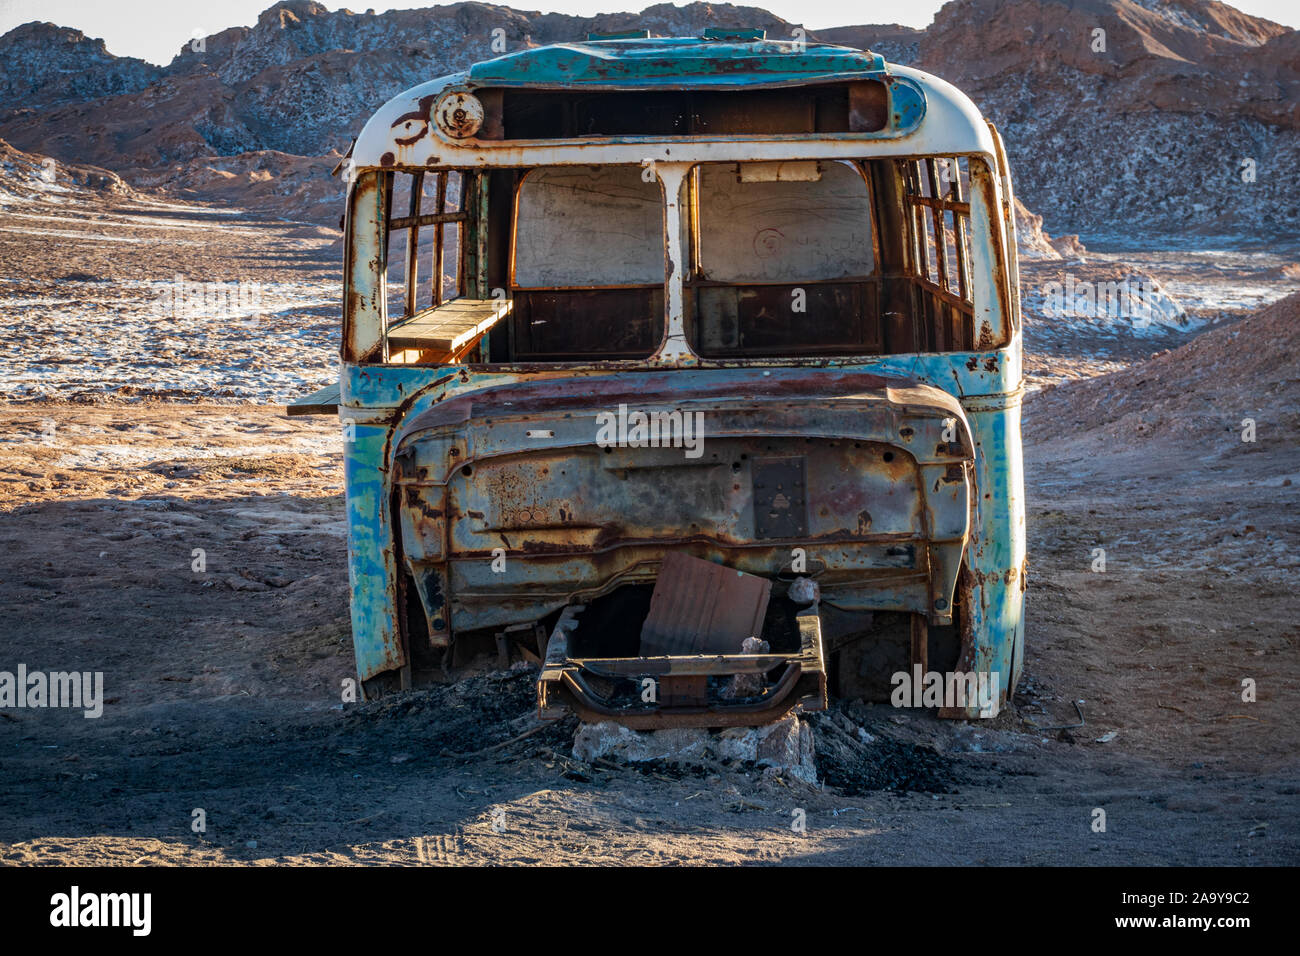 Dans le bus abandonnés désert d'Atacama, front view Banque D'Images